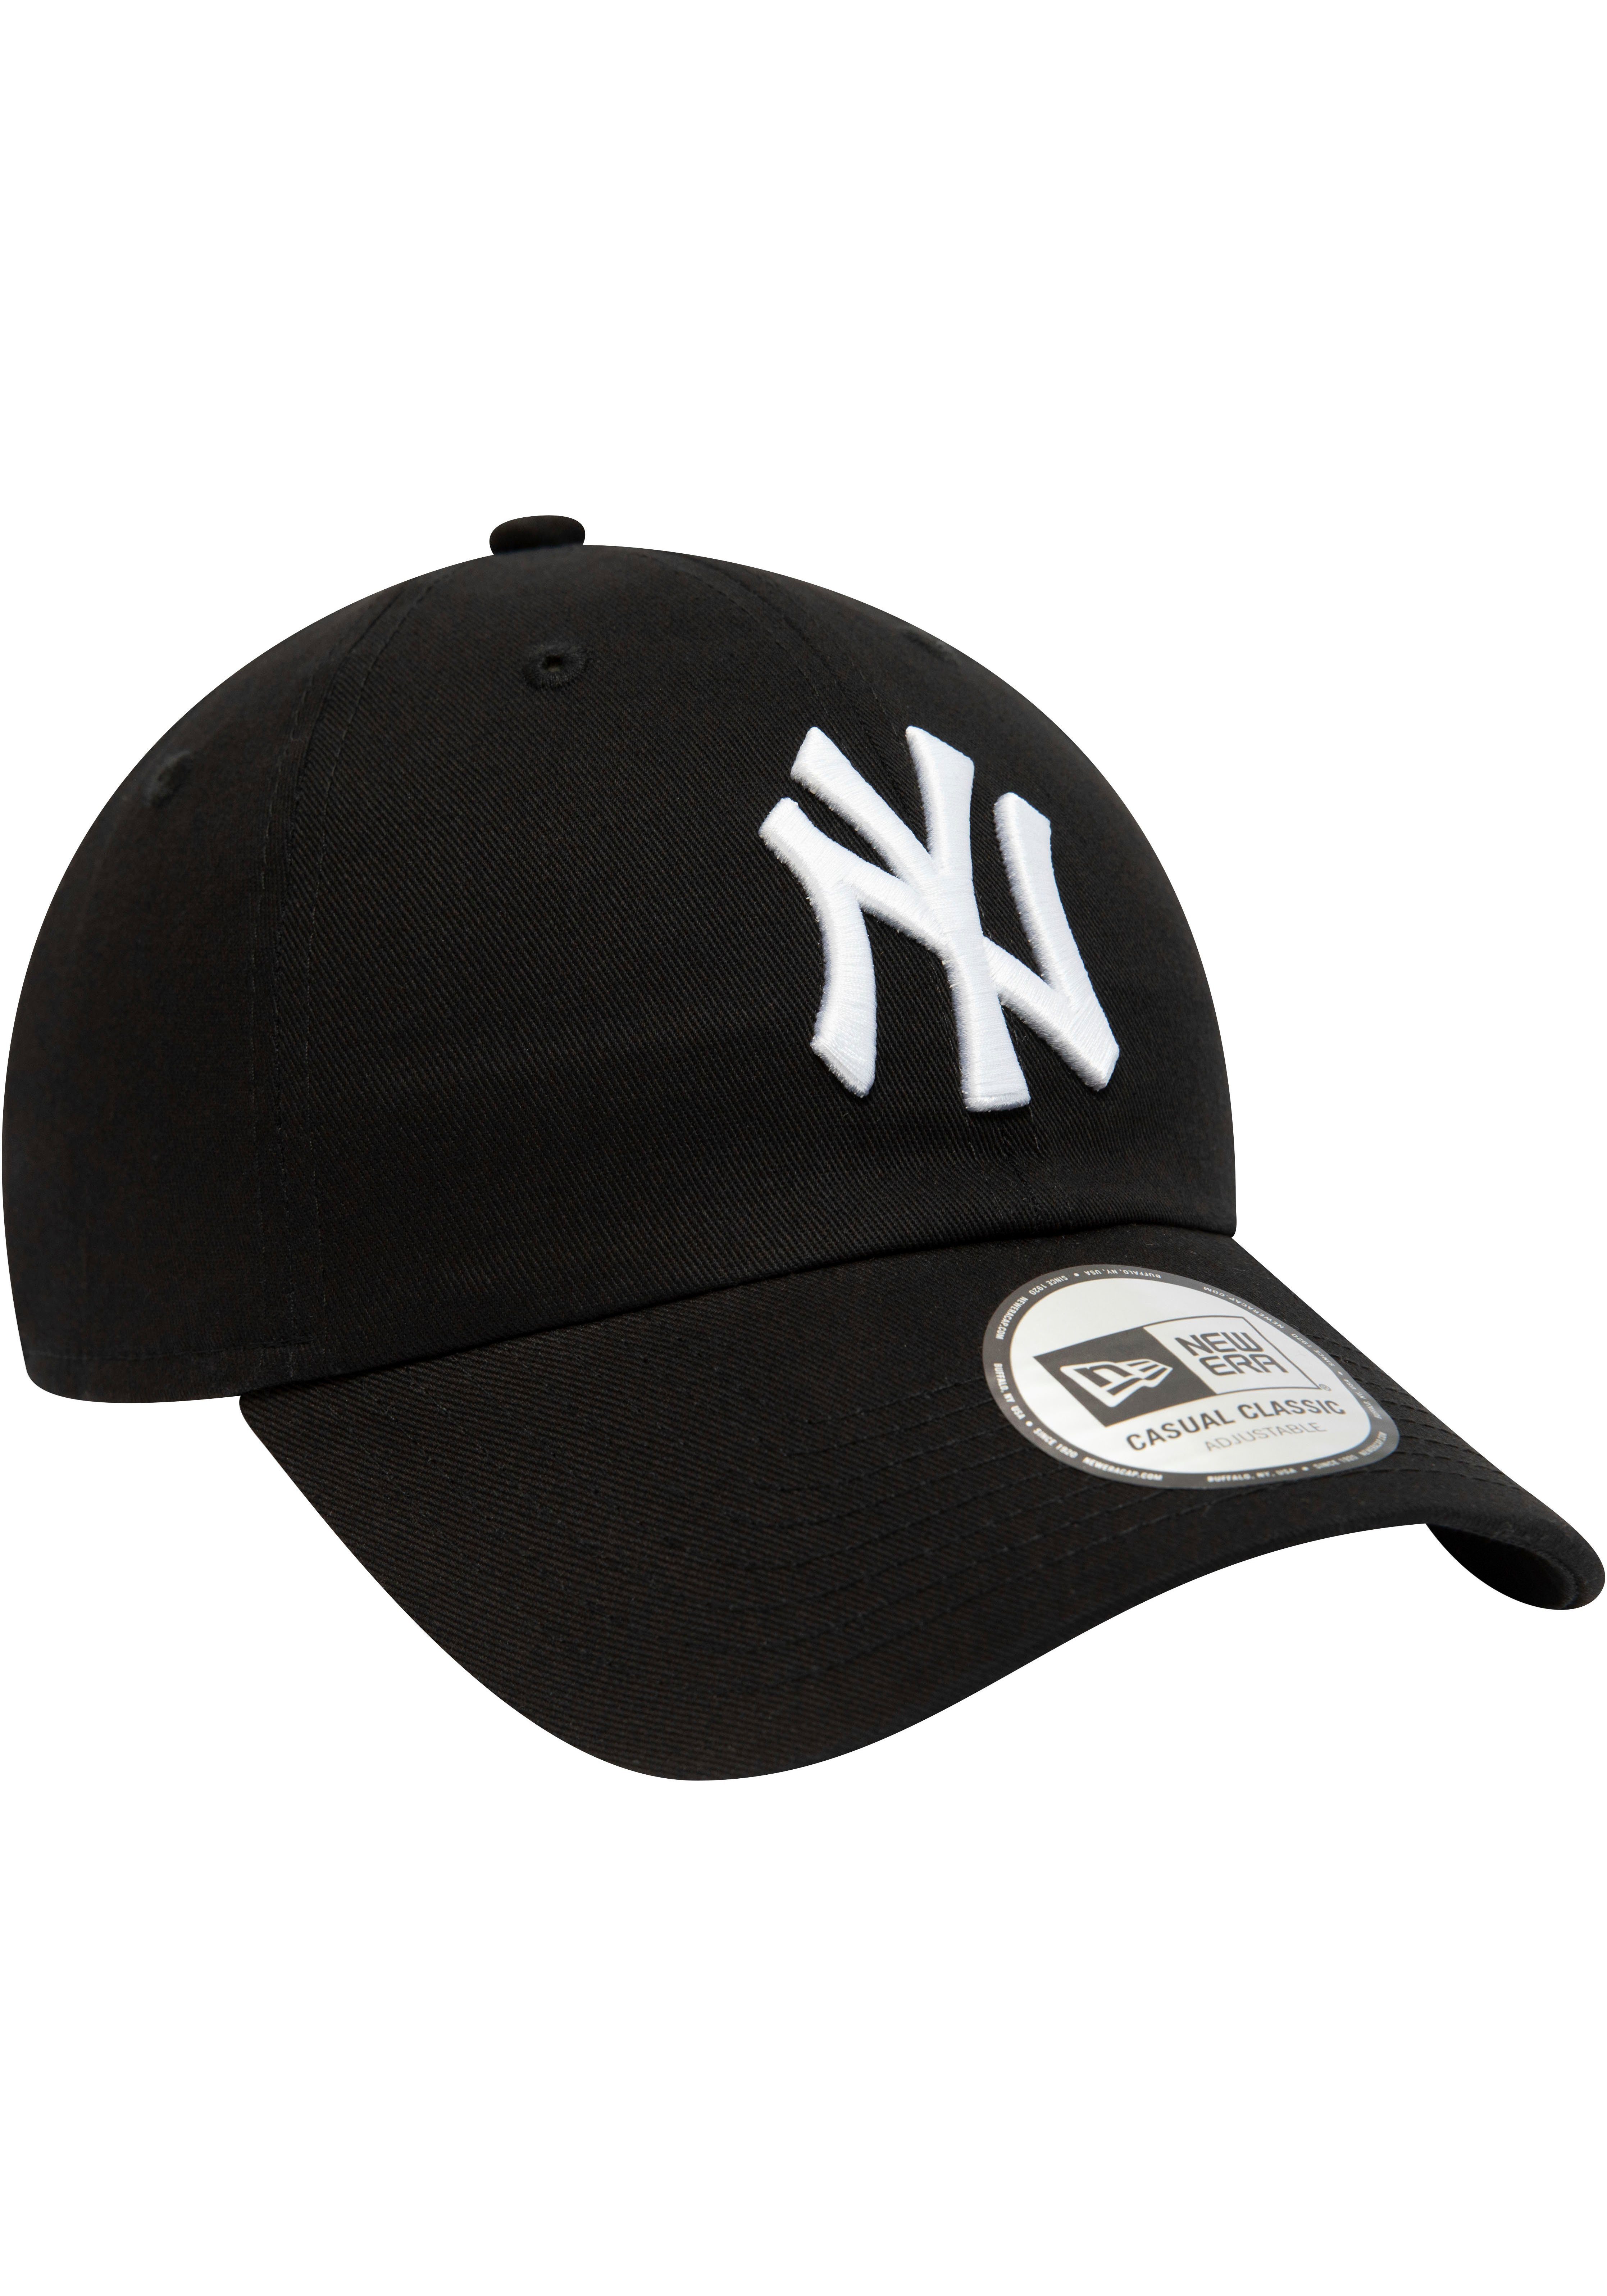 New Era NY Cap New Baseball Cap 940Leag Cap Era